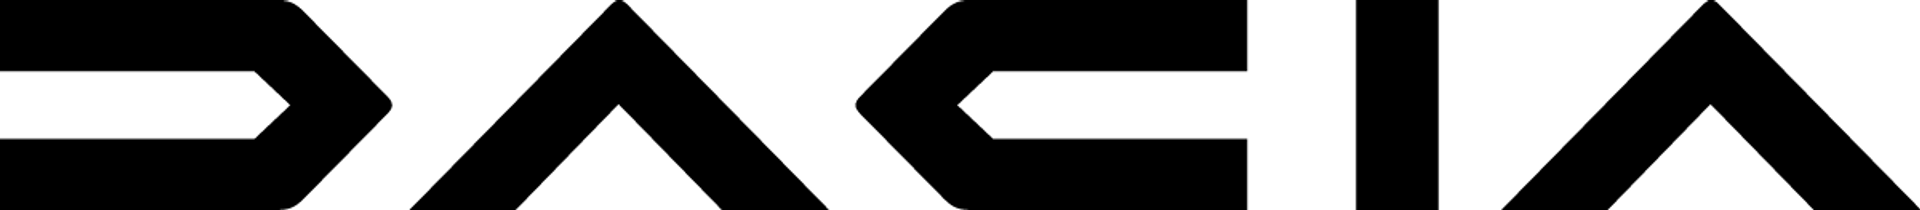 DACIA logo. Current weekly ad